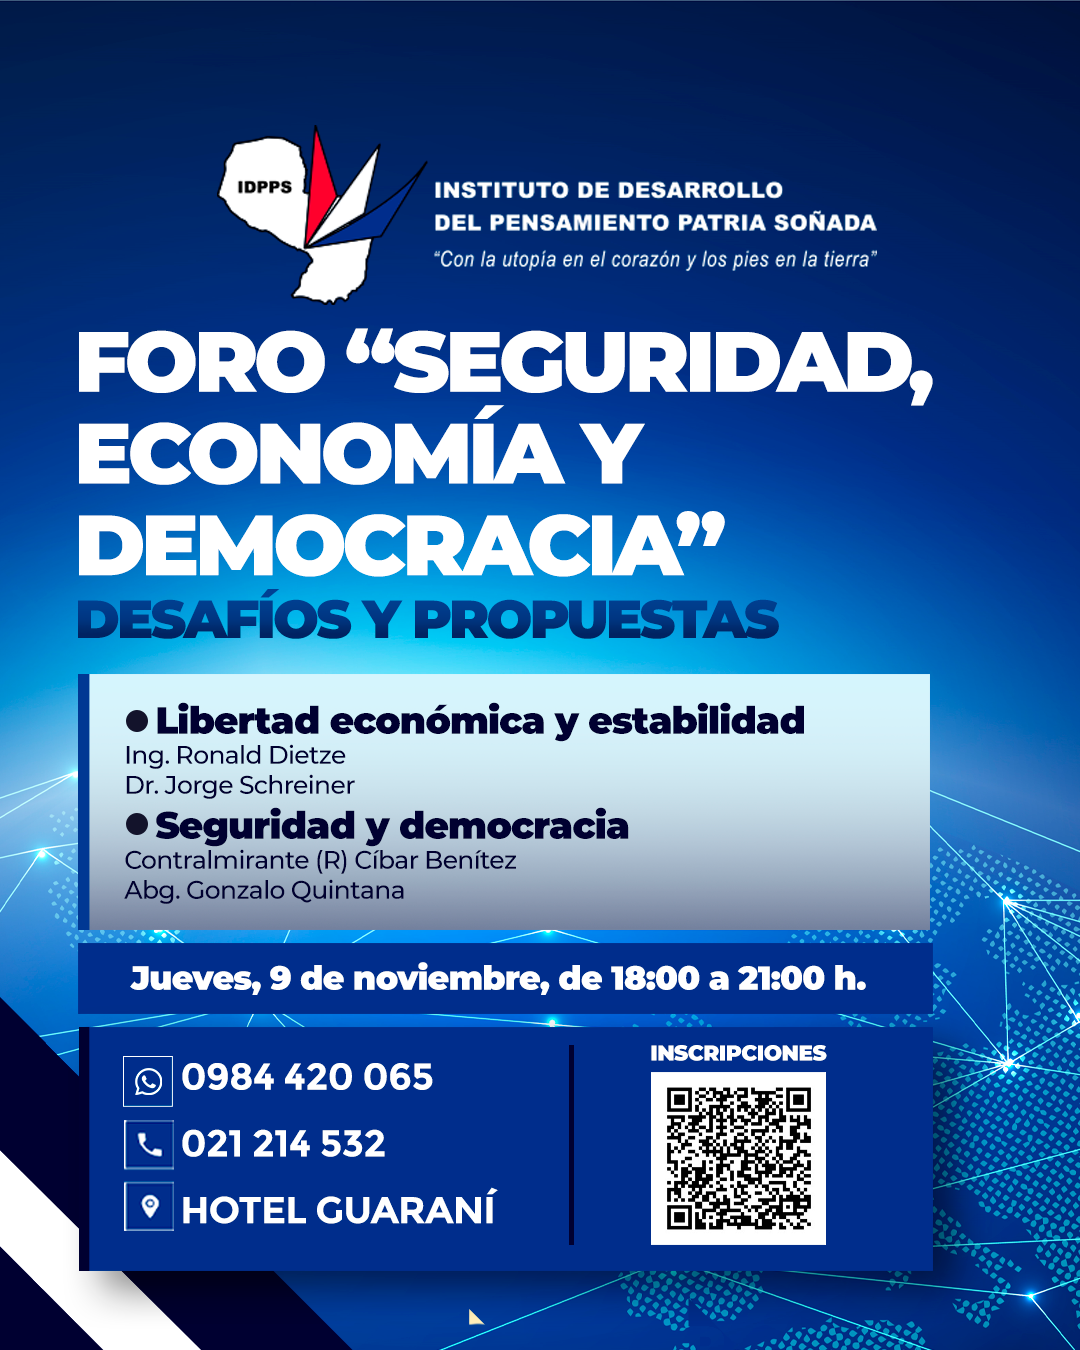 Foro “Seguridad, Economía y Democracia” se realizará hoy, a partir de las 18:00 horas, en Asunción